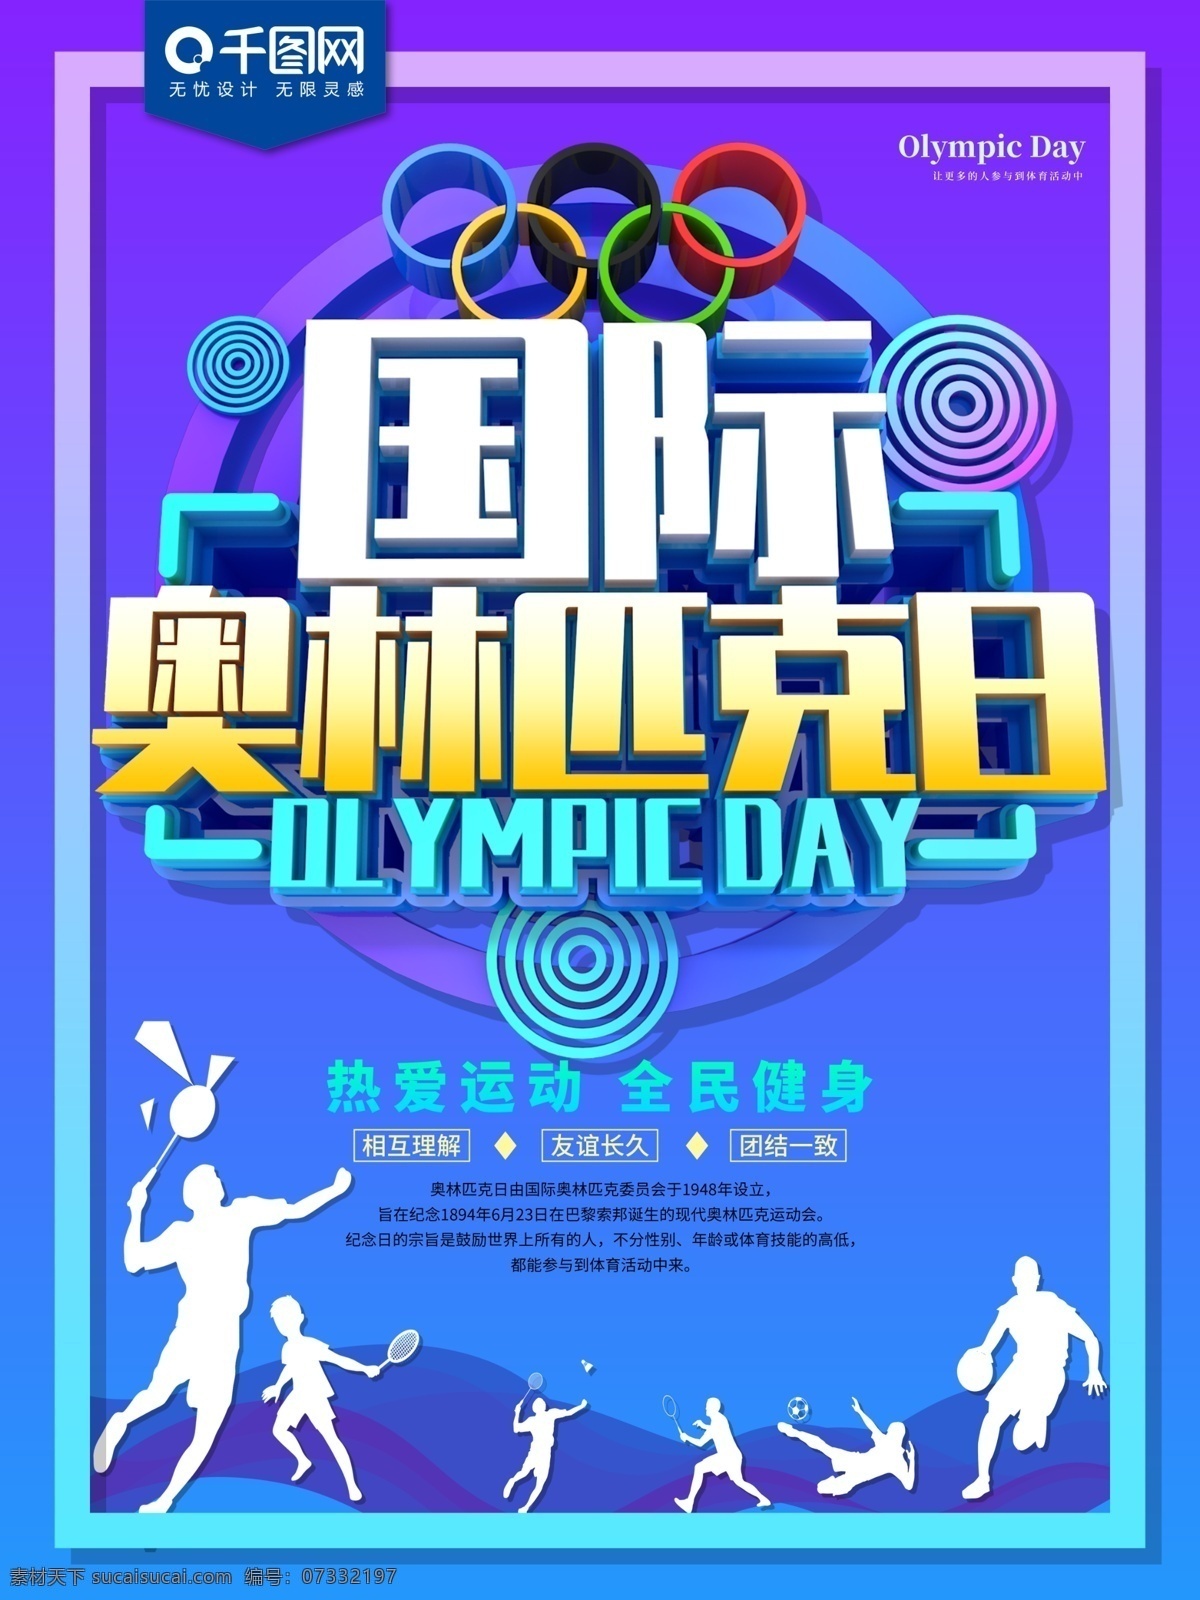 国际 奥林匹克日 炫彩 海报 奥运会 运动会 超越 挑战 运动前行 节日海报 公益海报 健身